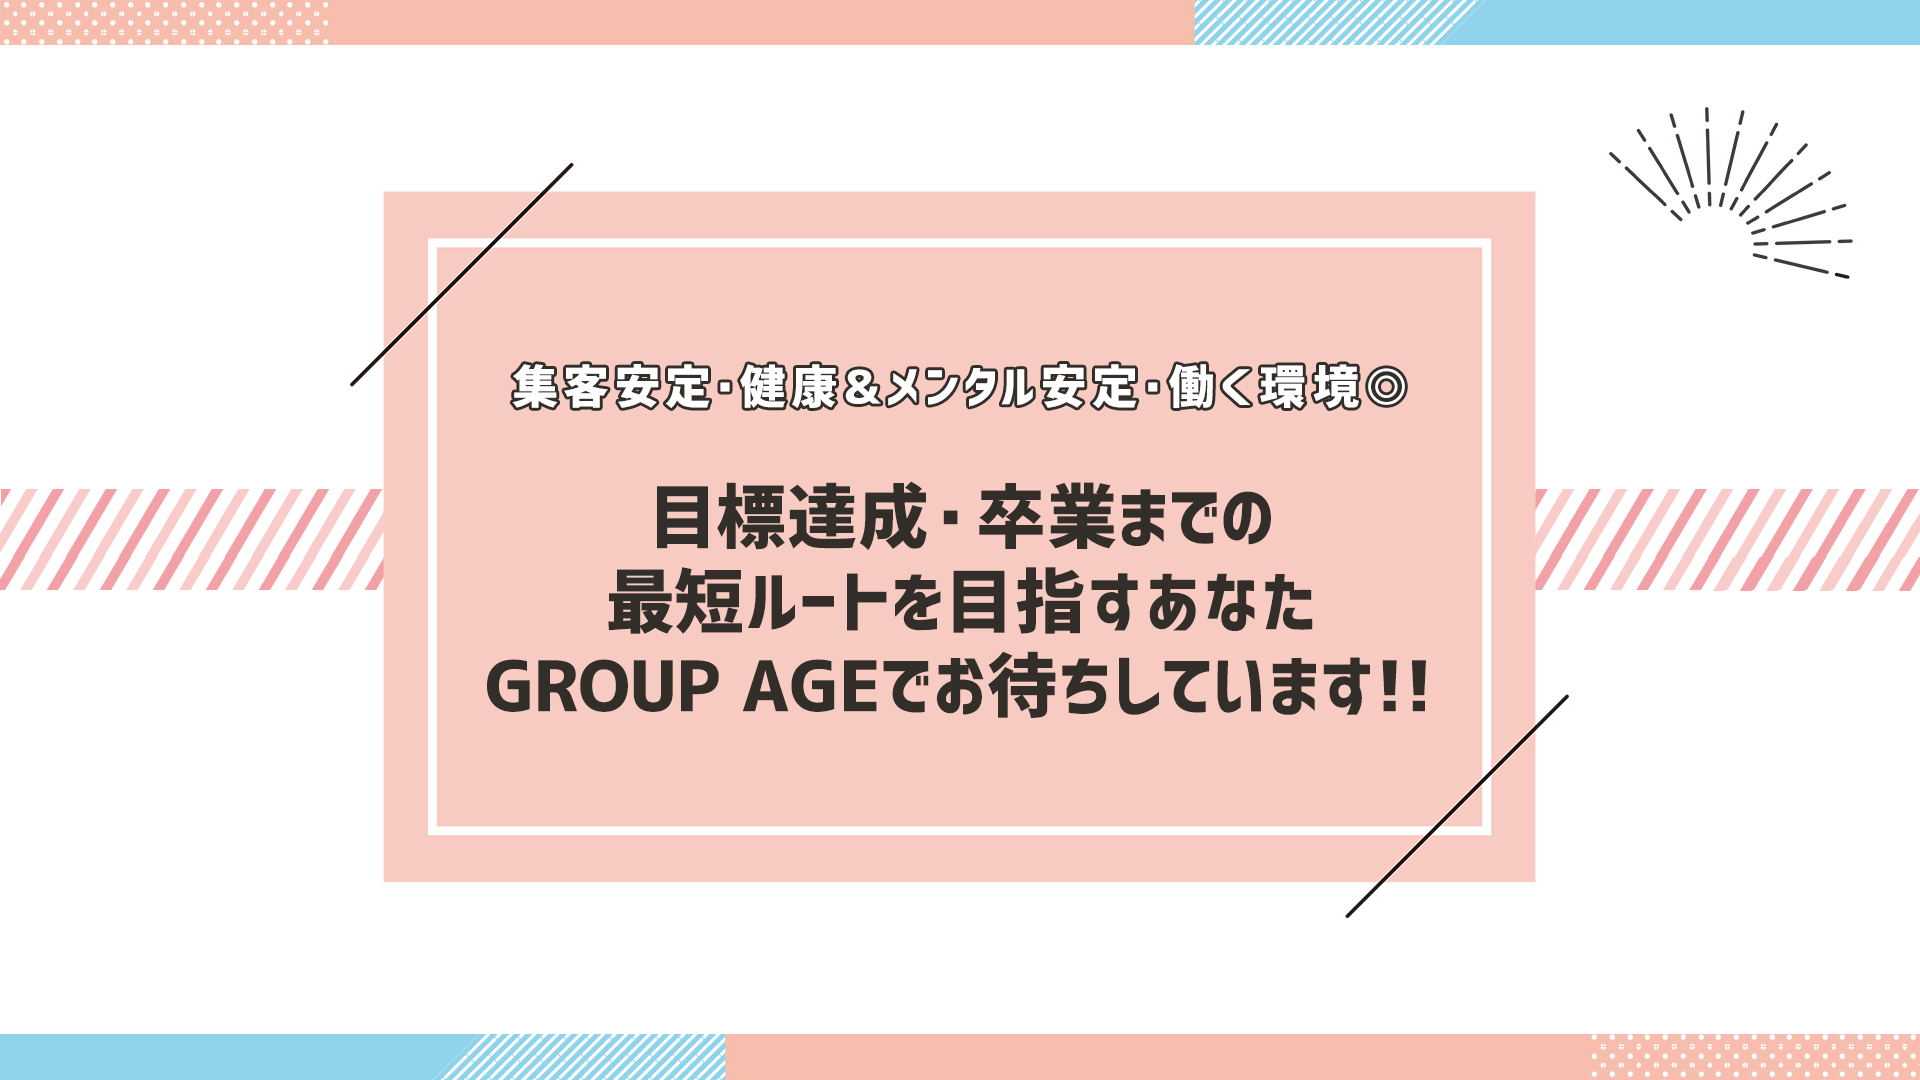 GROUP AGE－グループアージュ